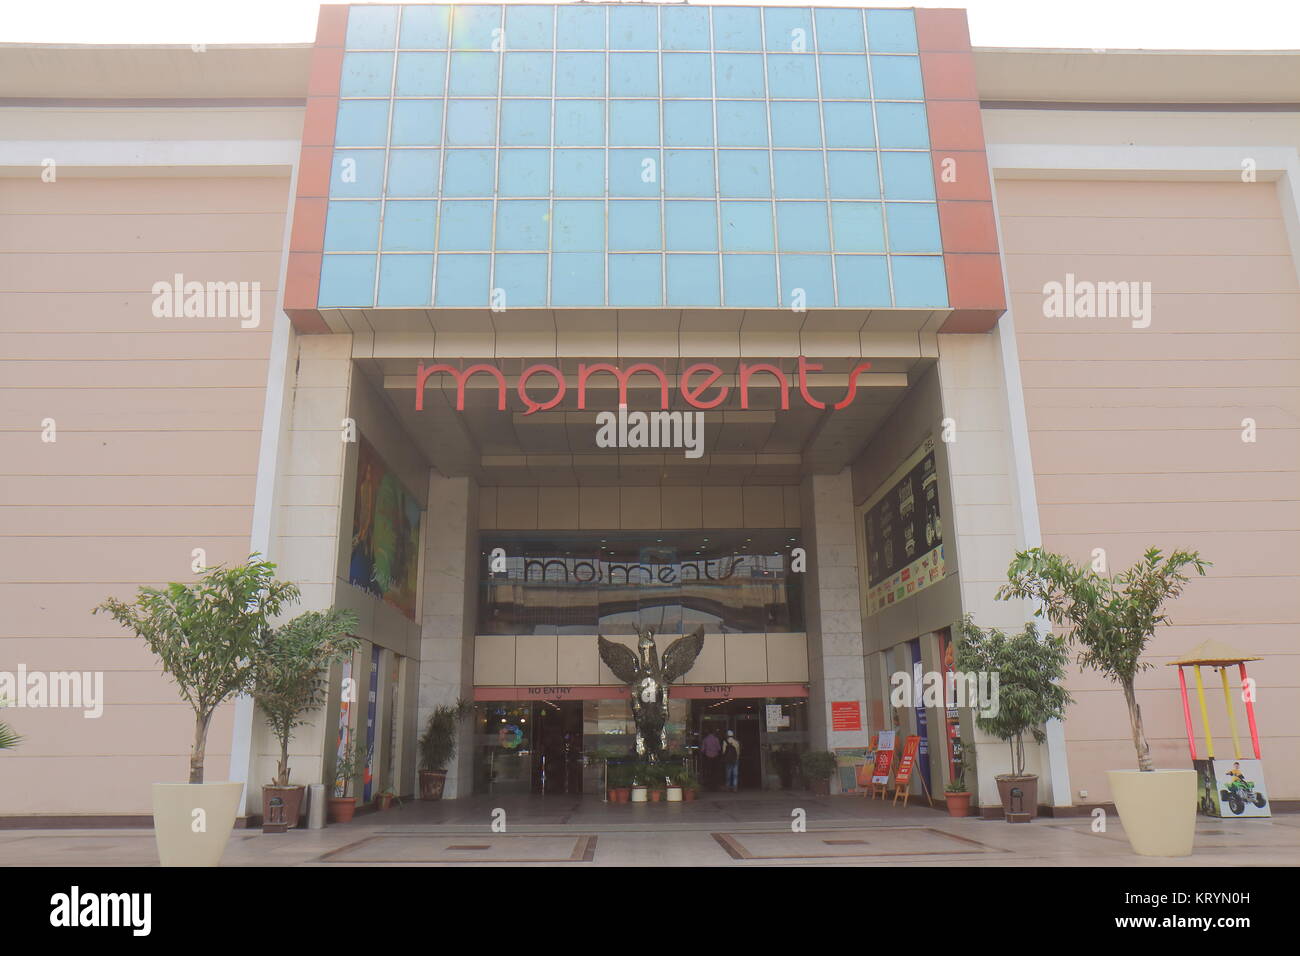 La gente visita momenti shopping mall a Nuova Delhi in India Foto Stock